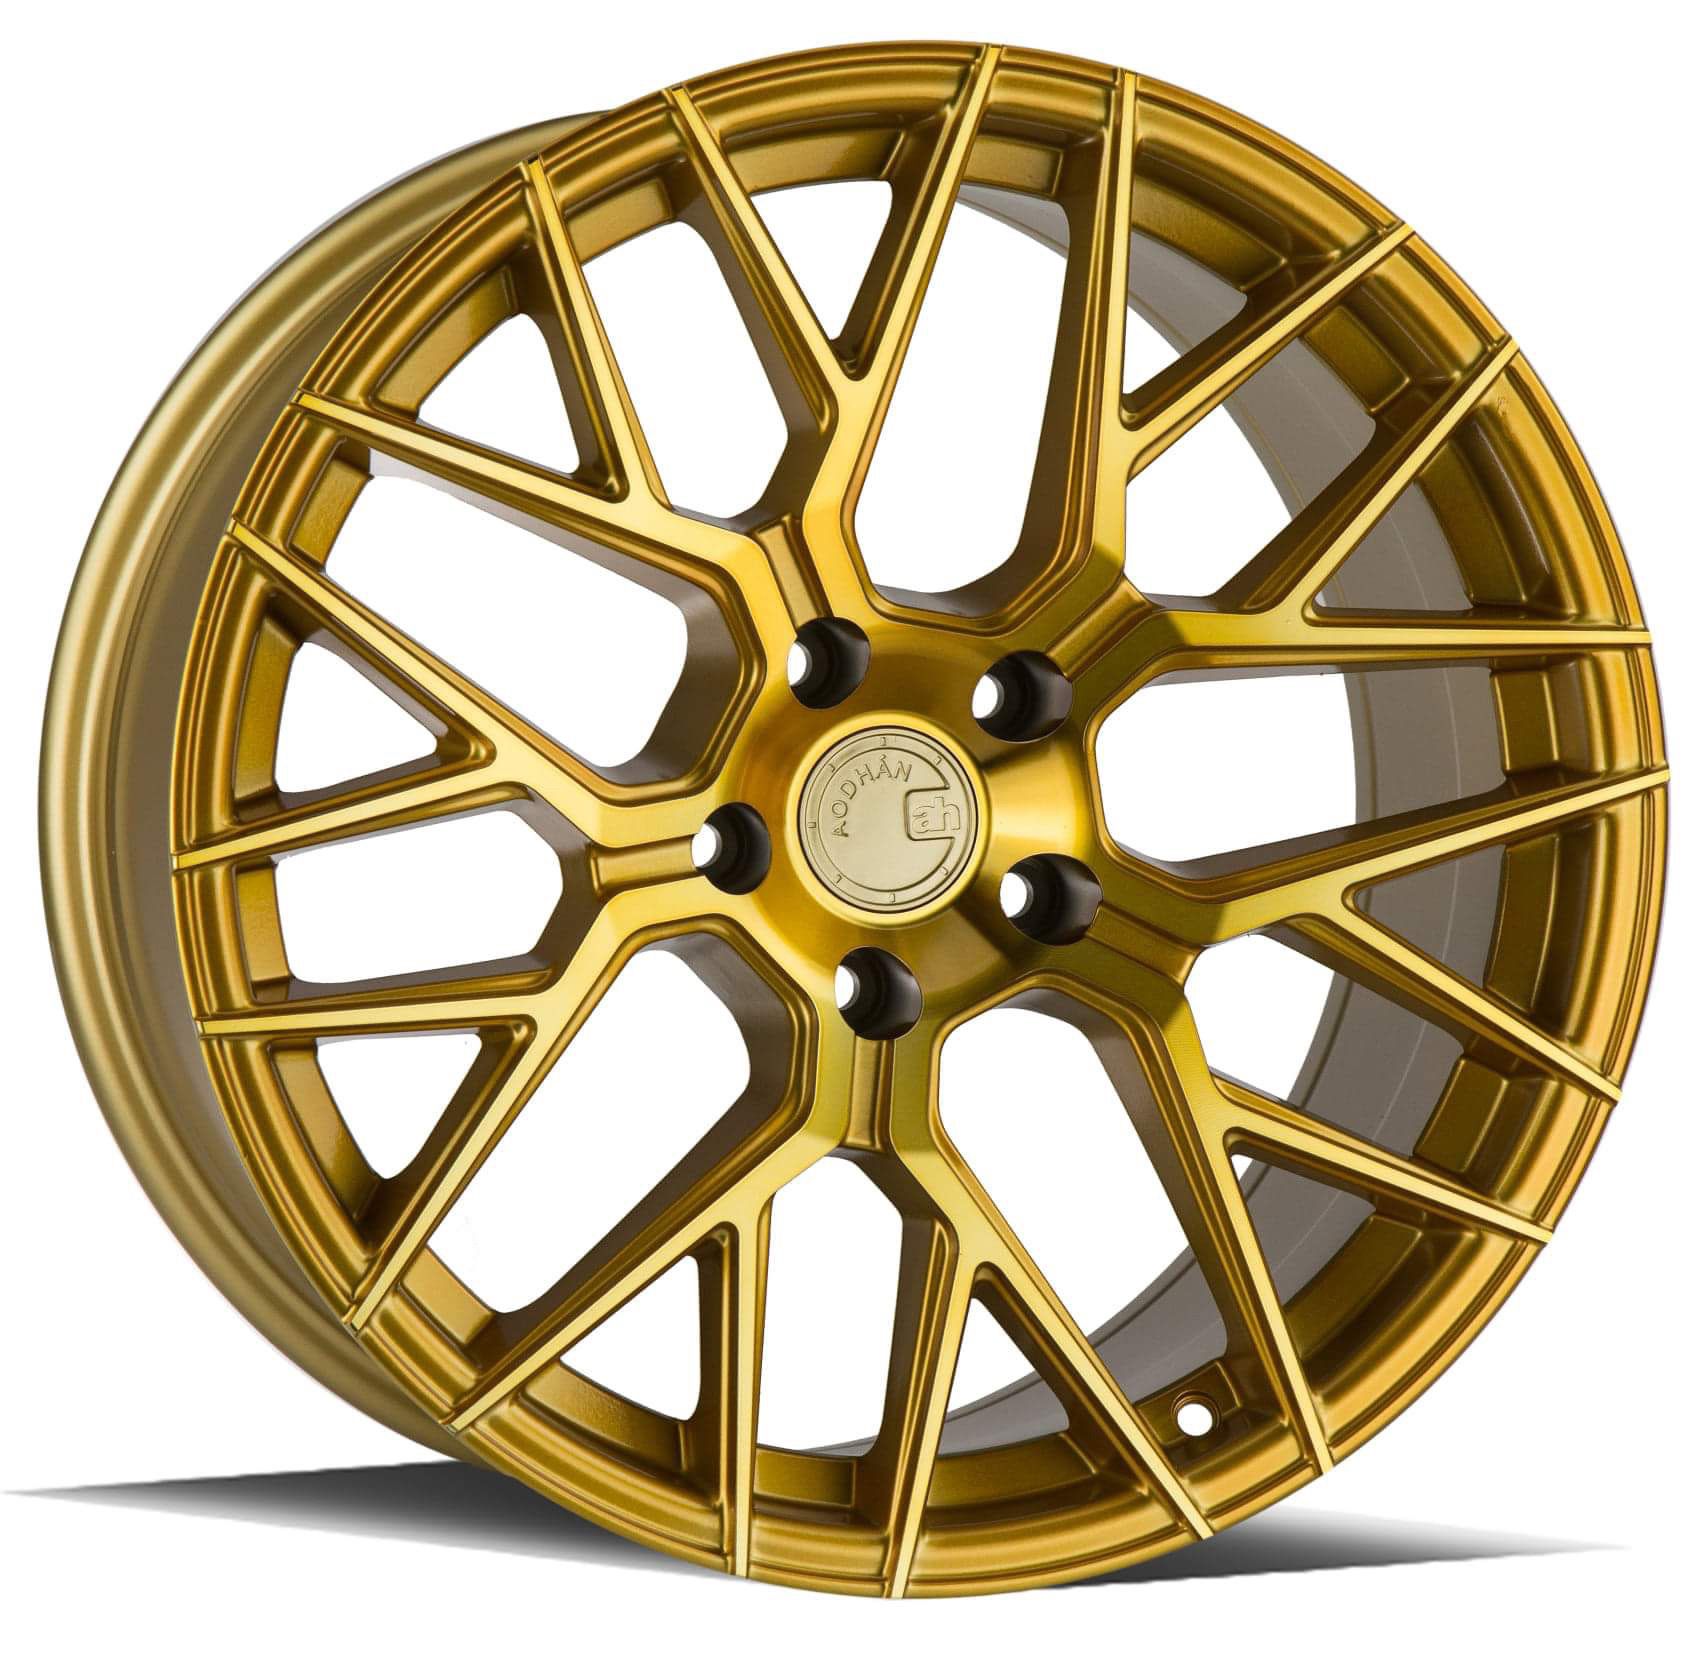 20” new gold rims tires set 5x120 5x114.3